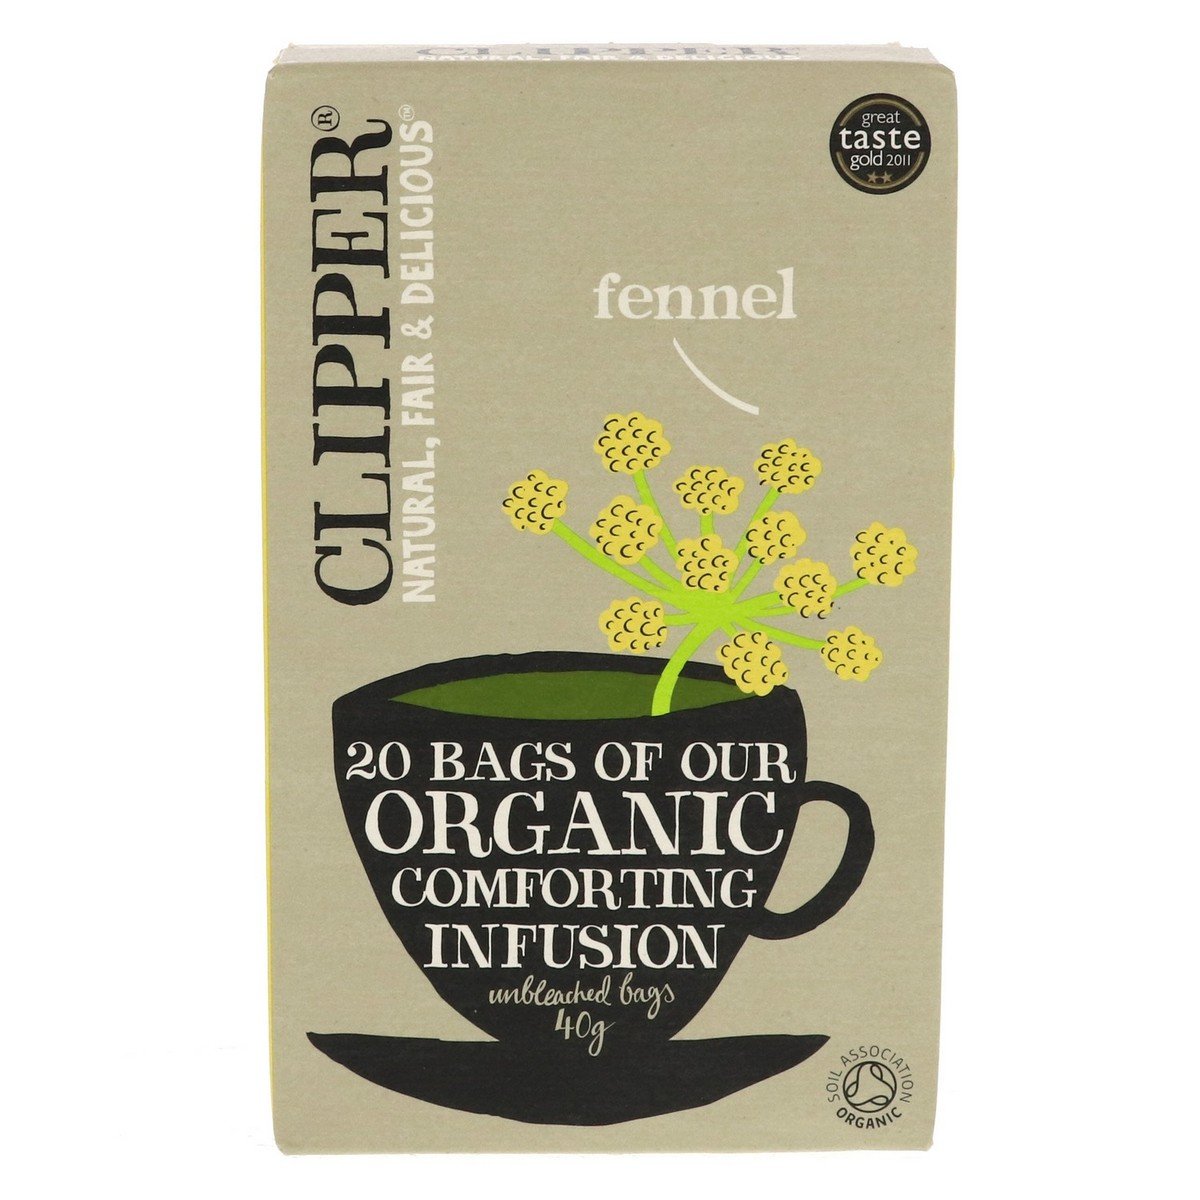 Clipper Organic Fennel Tea Bag 20 pcs